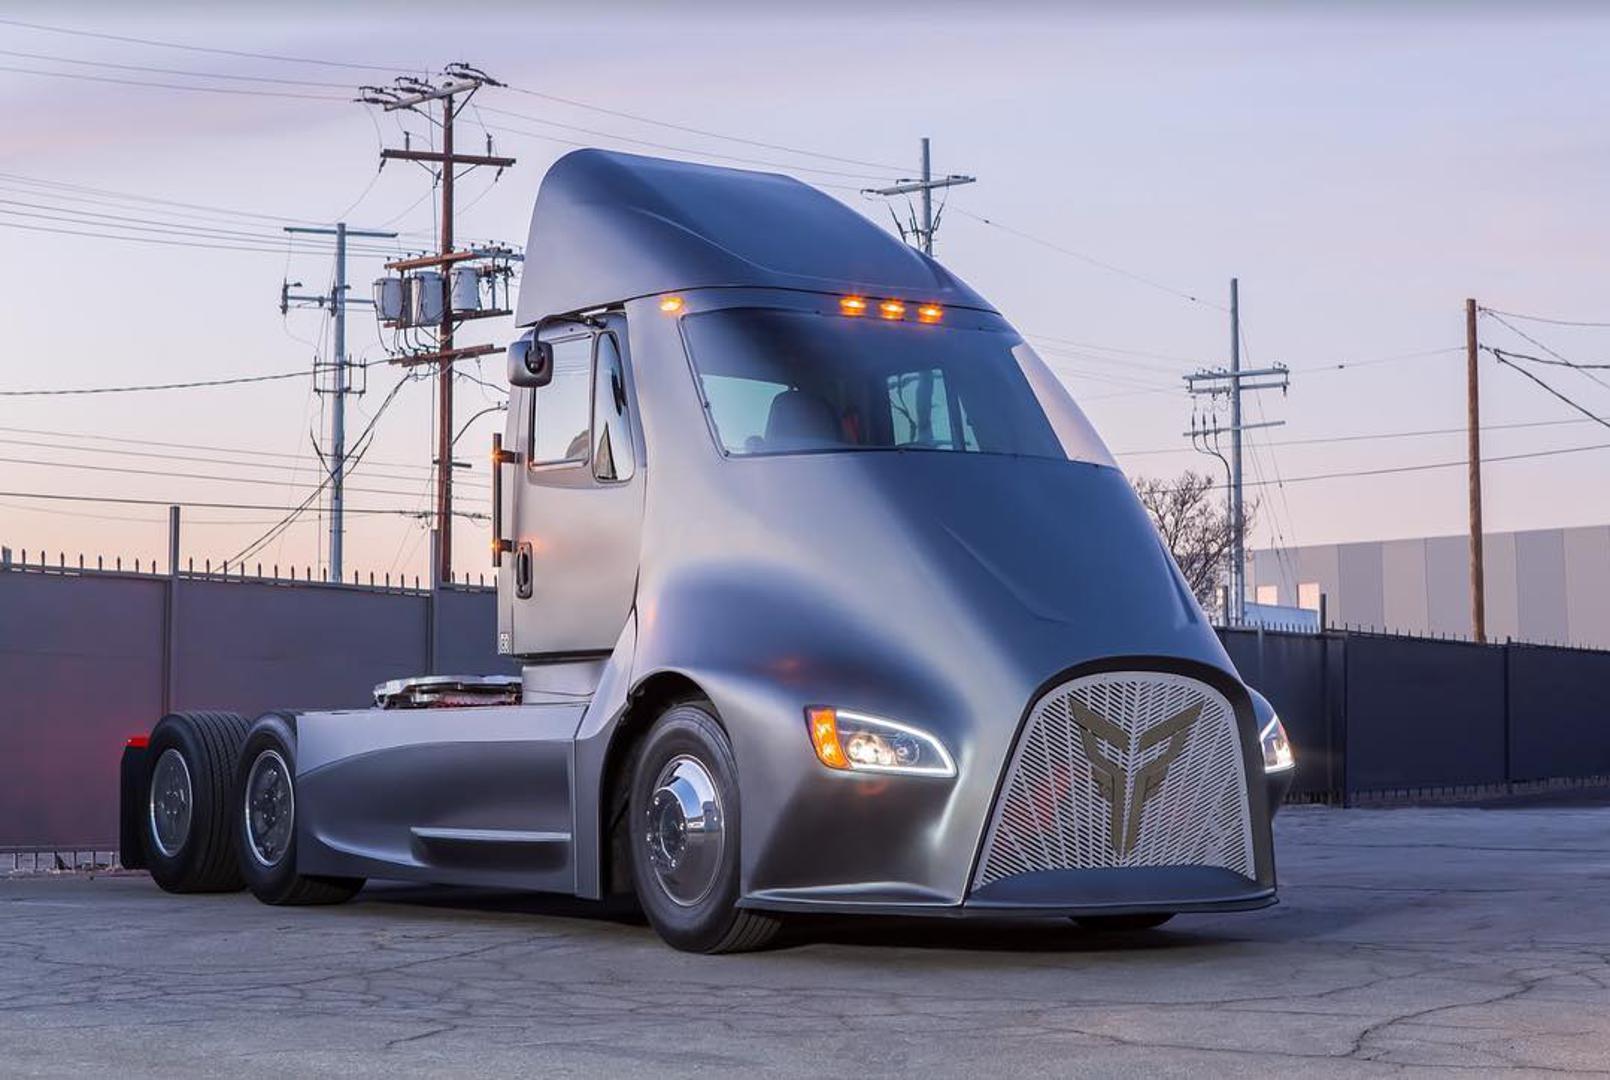 Nakon što je Tesla izazvao veliko zanimanje svojim električnim kamionom, pojavila se konkurencija - Thor Trucks